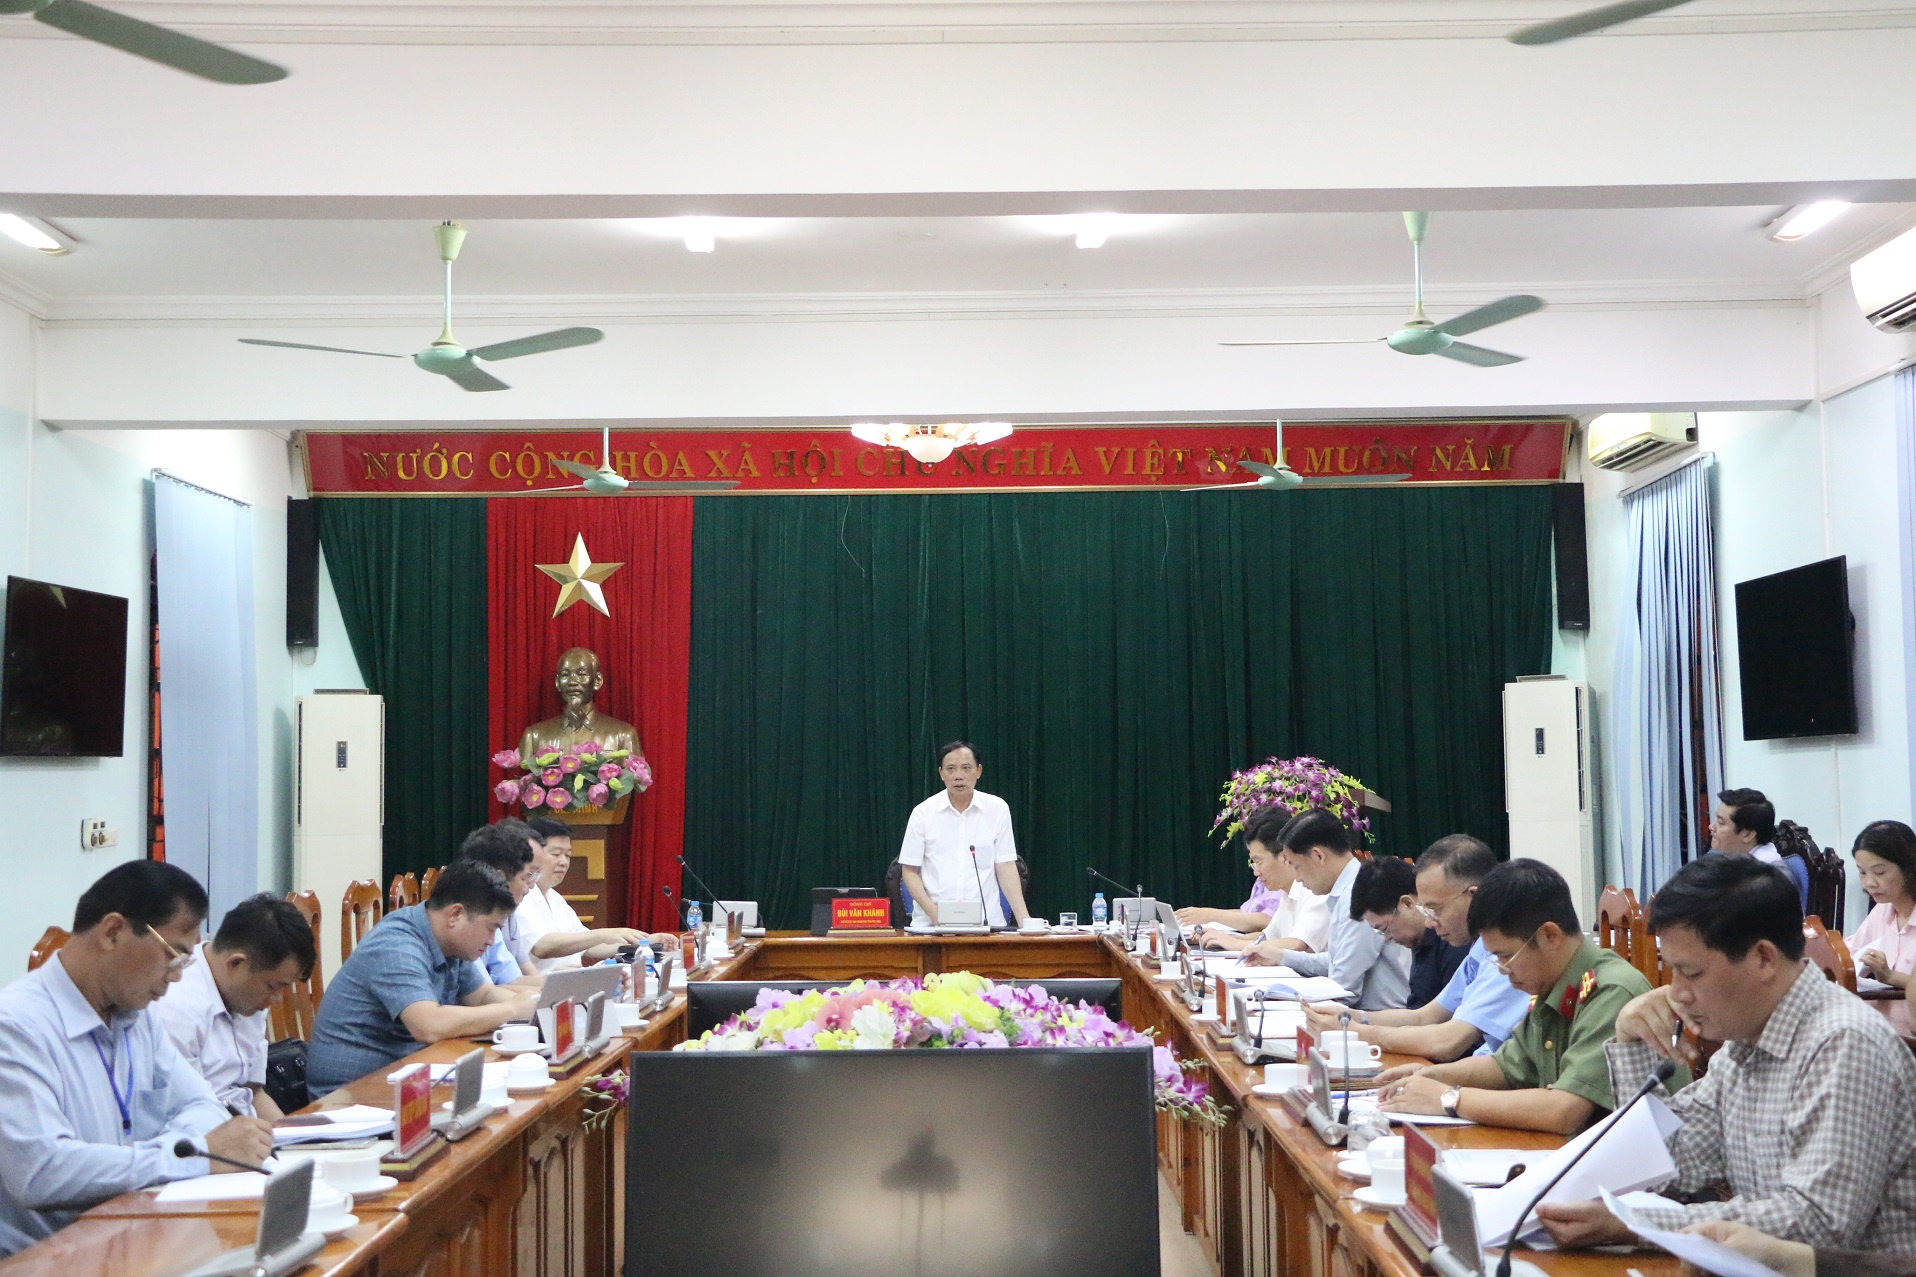 Đồng chí Chủ tịch UBND tỉnh họp bàn giải quyết đơn của các hộ dân tổ 8 phường Tân Thịnh, thành phố Hòa Bình và Công ty Luật TNHH Duy Tín, thành phố Hà Nội